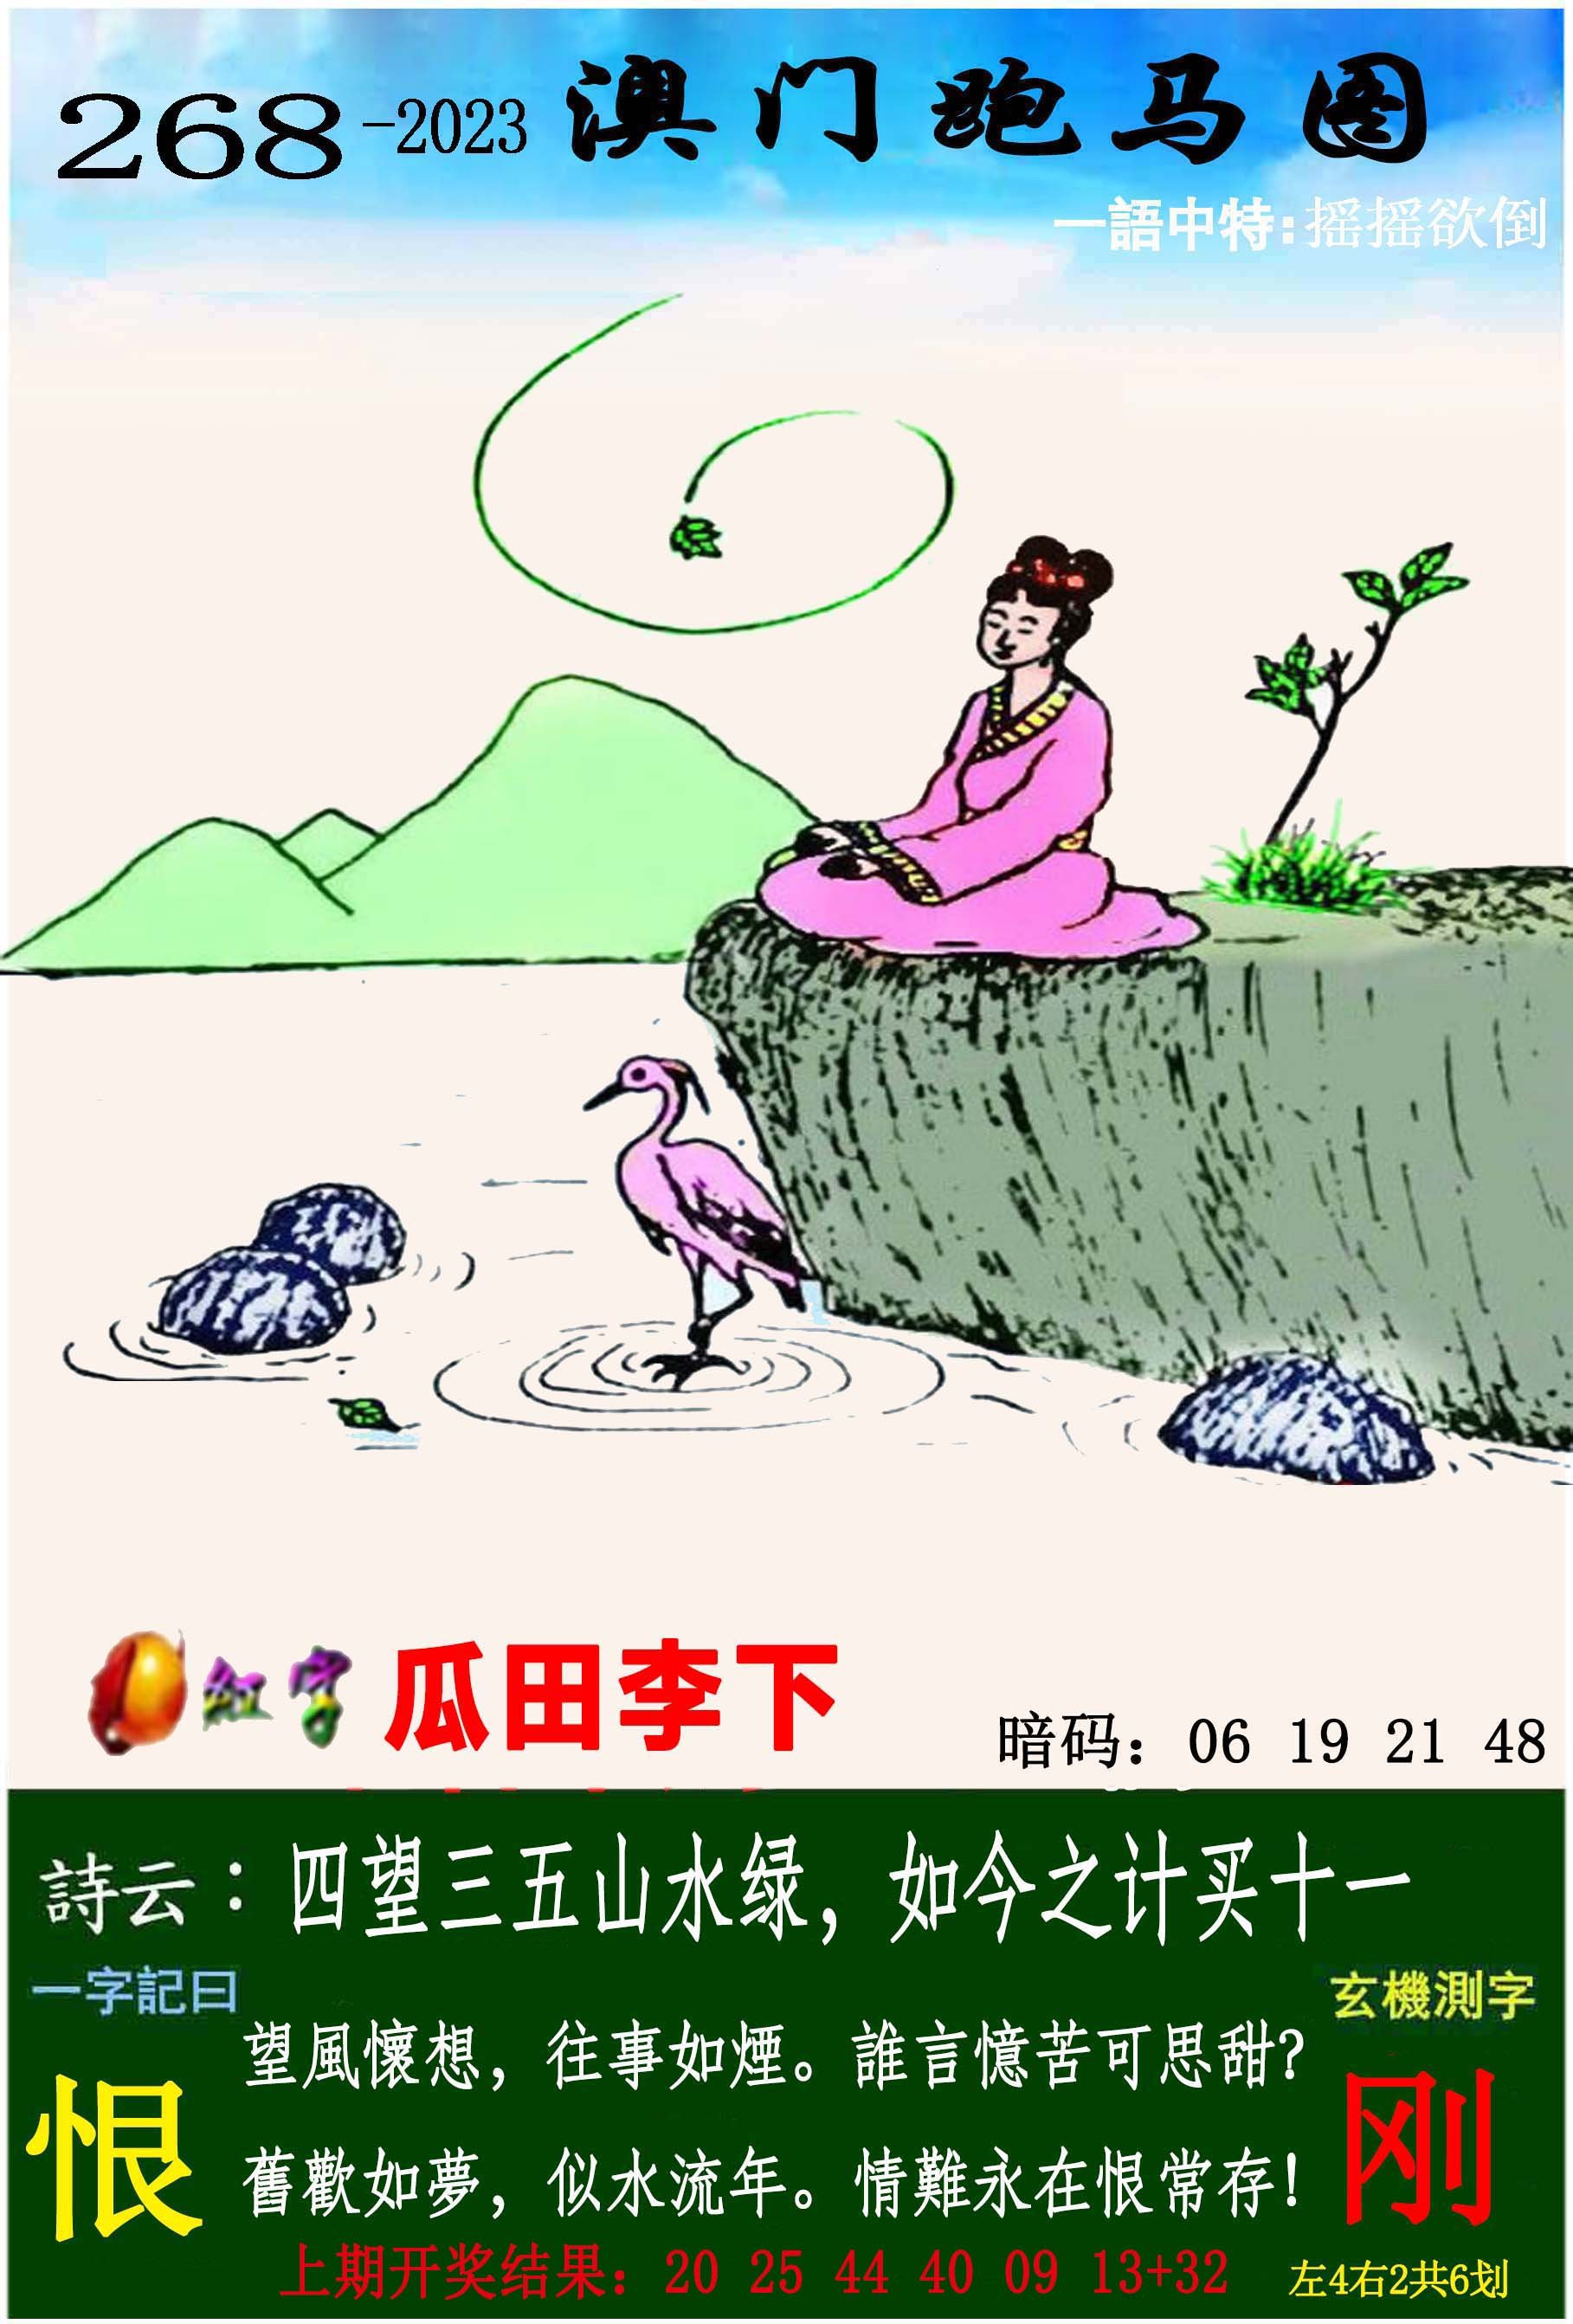 年轻情侣牵着马散步-蓝牛仔影像-中国原创广告影像素材